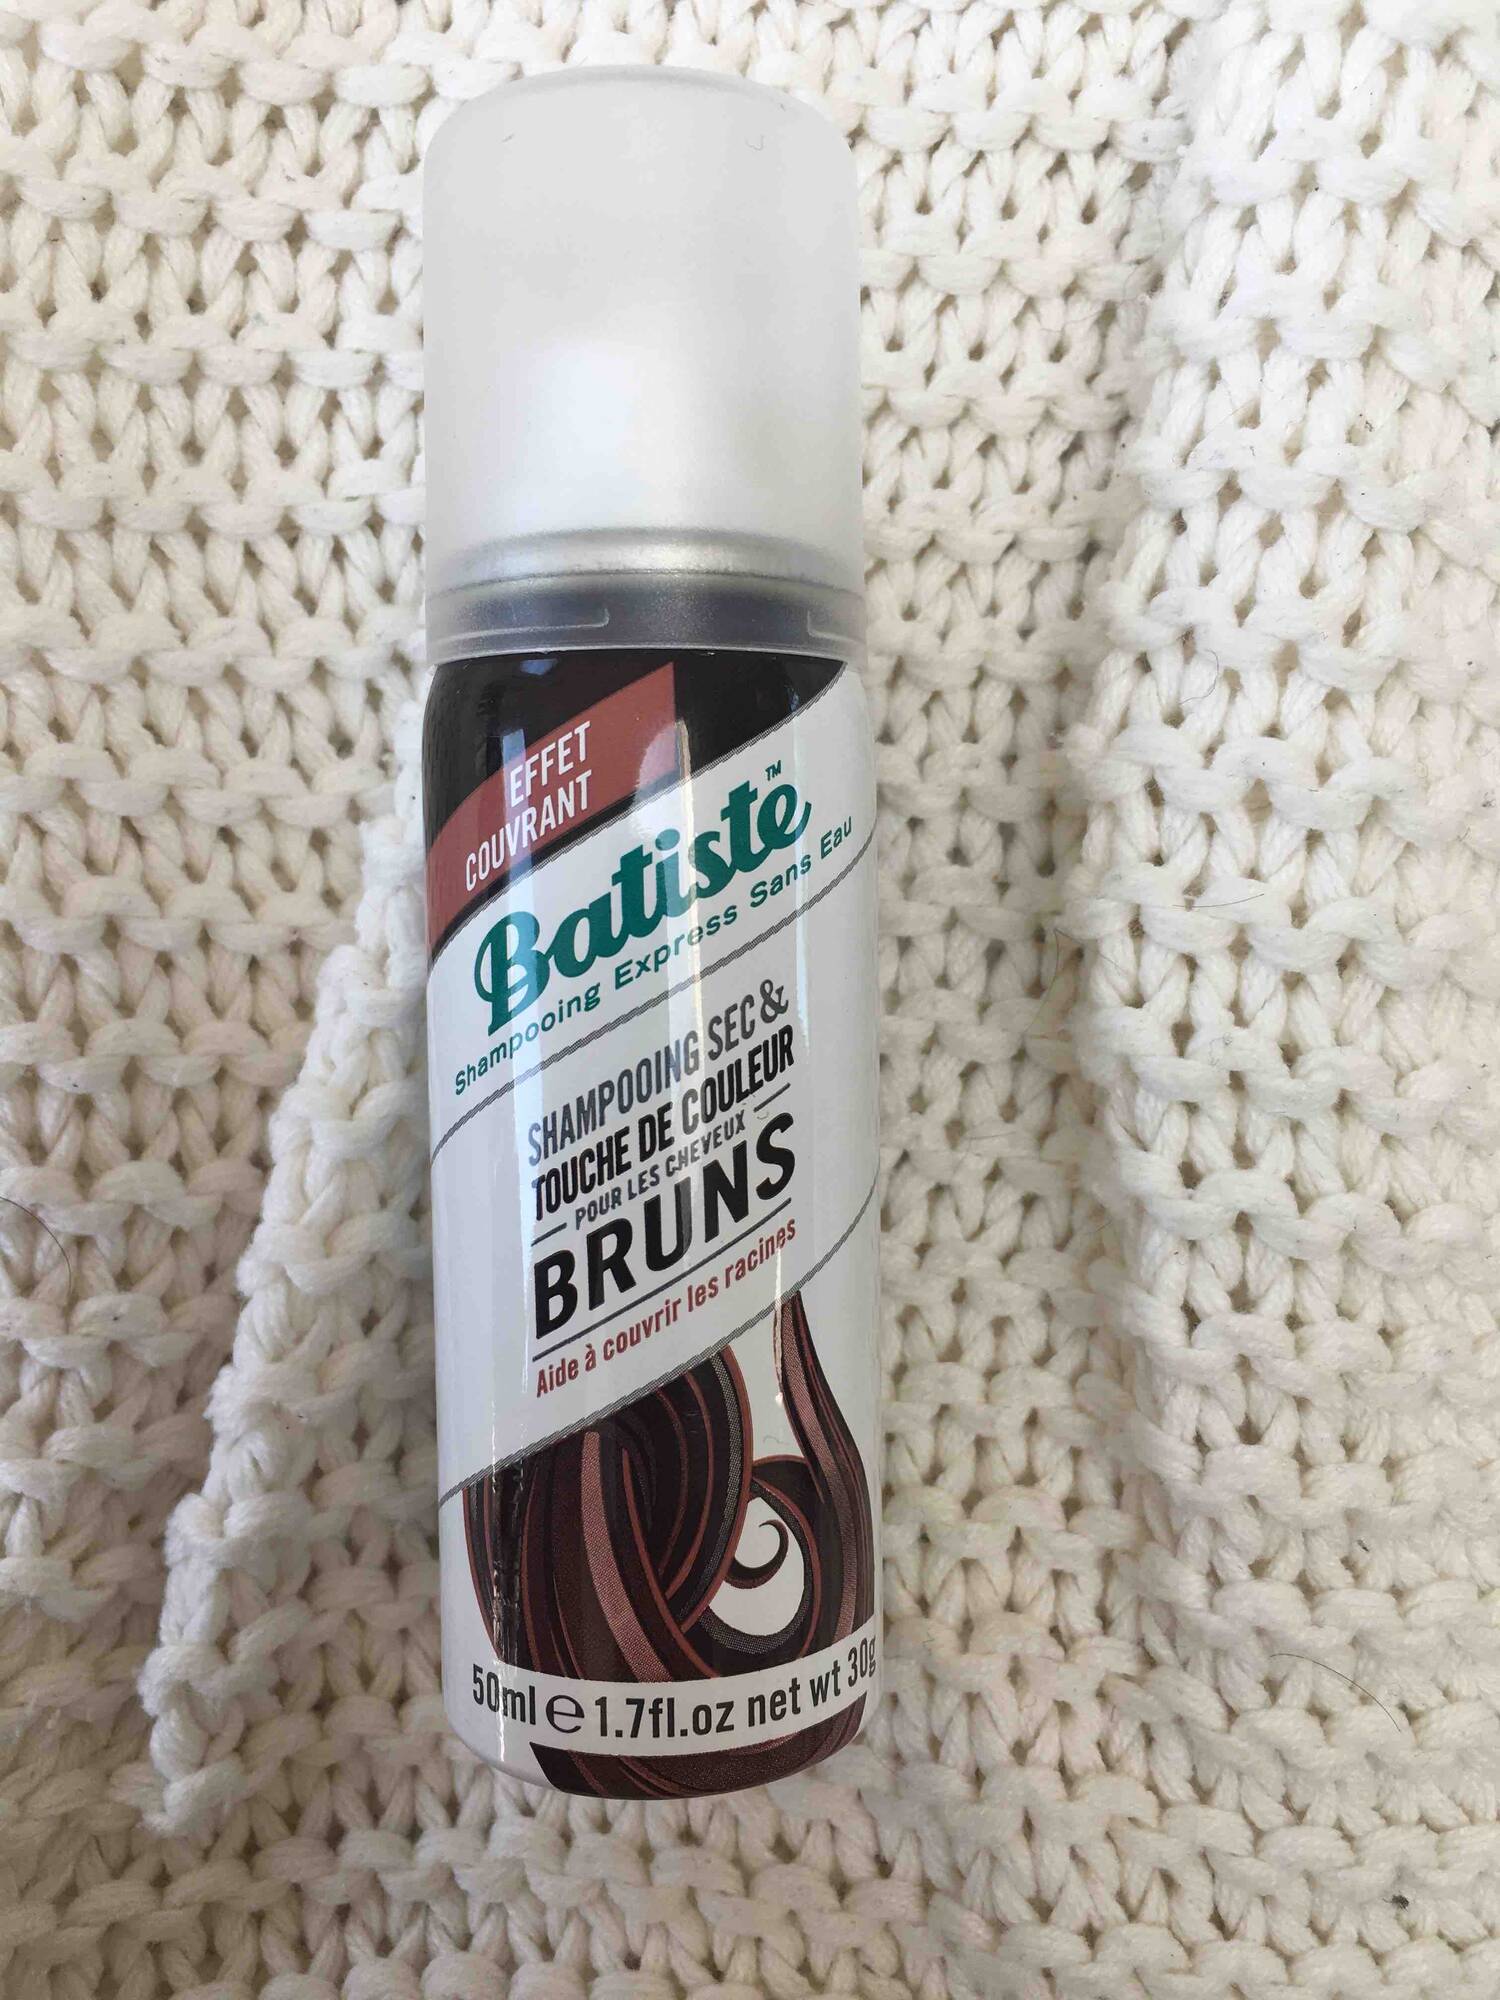 BATISTE - Bruns - Shampooing sec & touche de couleur 